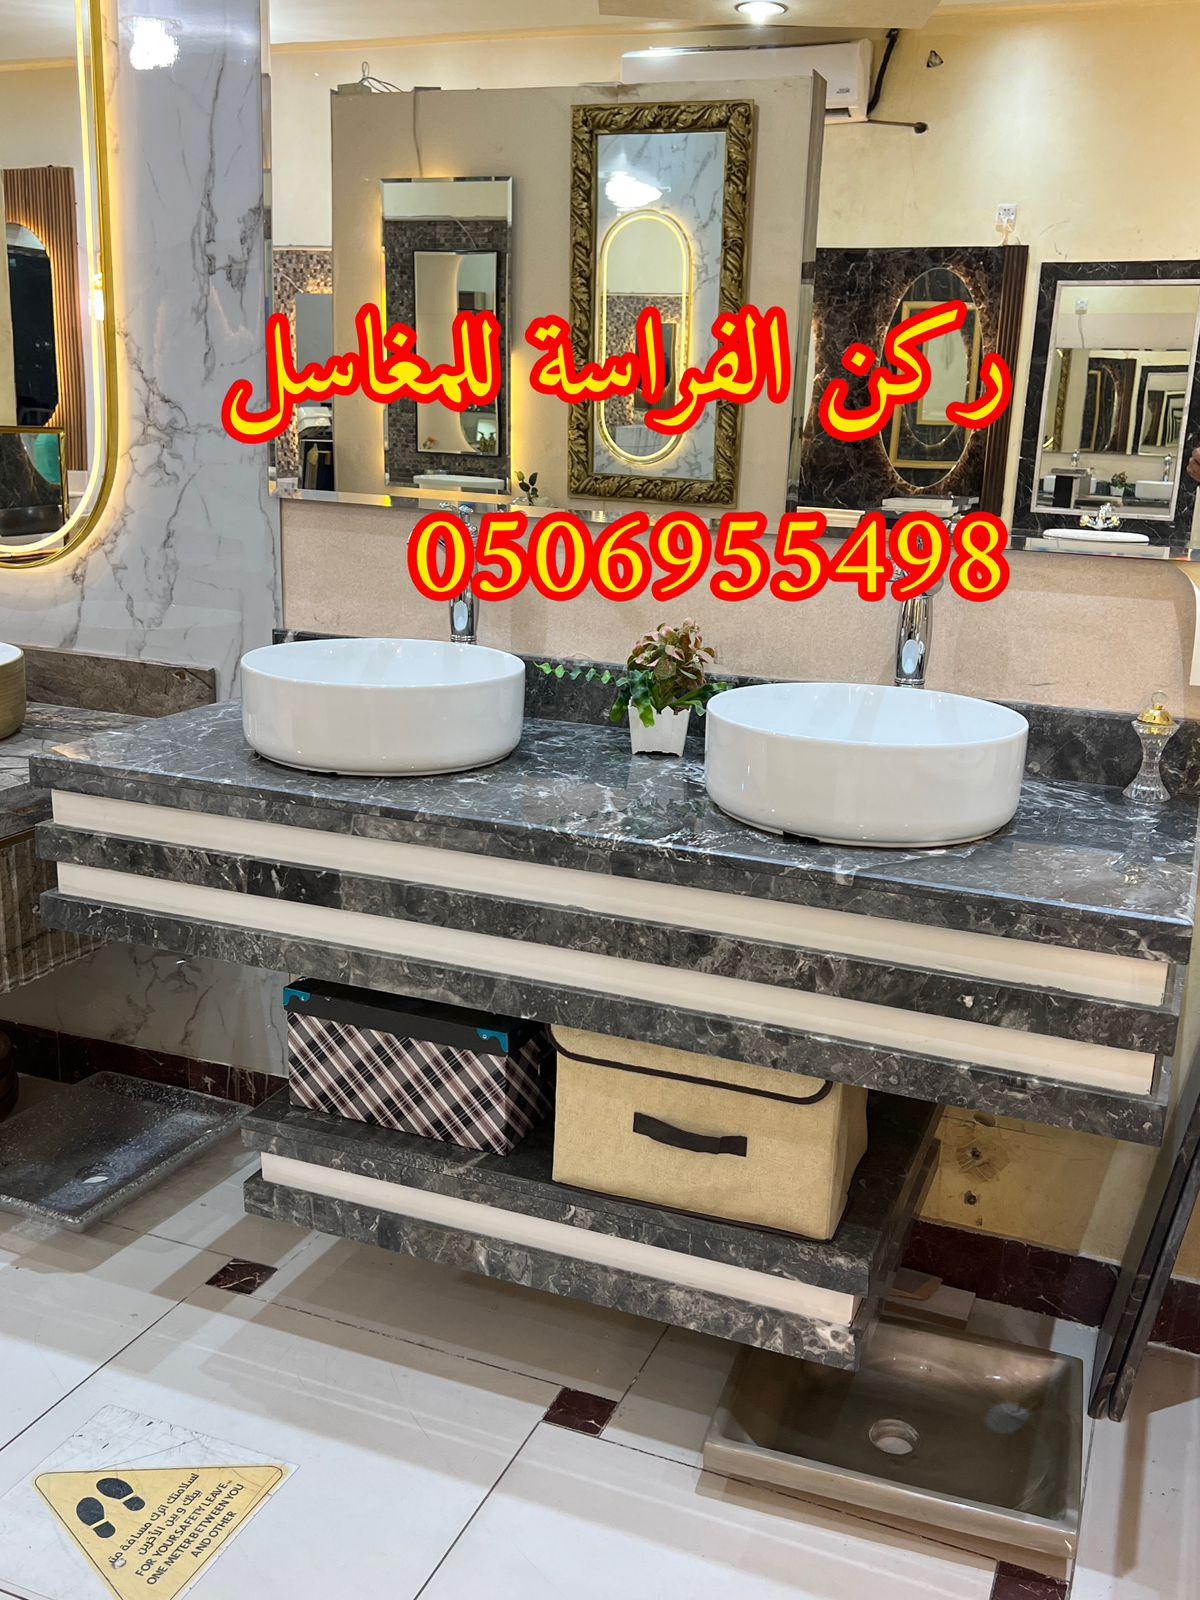 تصاميم مغاسل رخام للمجالس في الرياض,0506955498 206275608